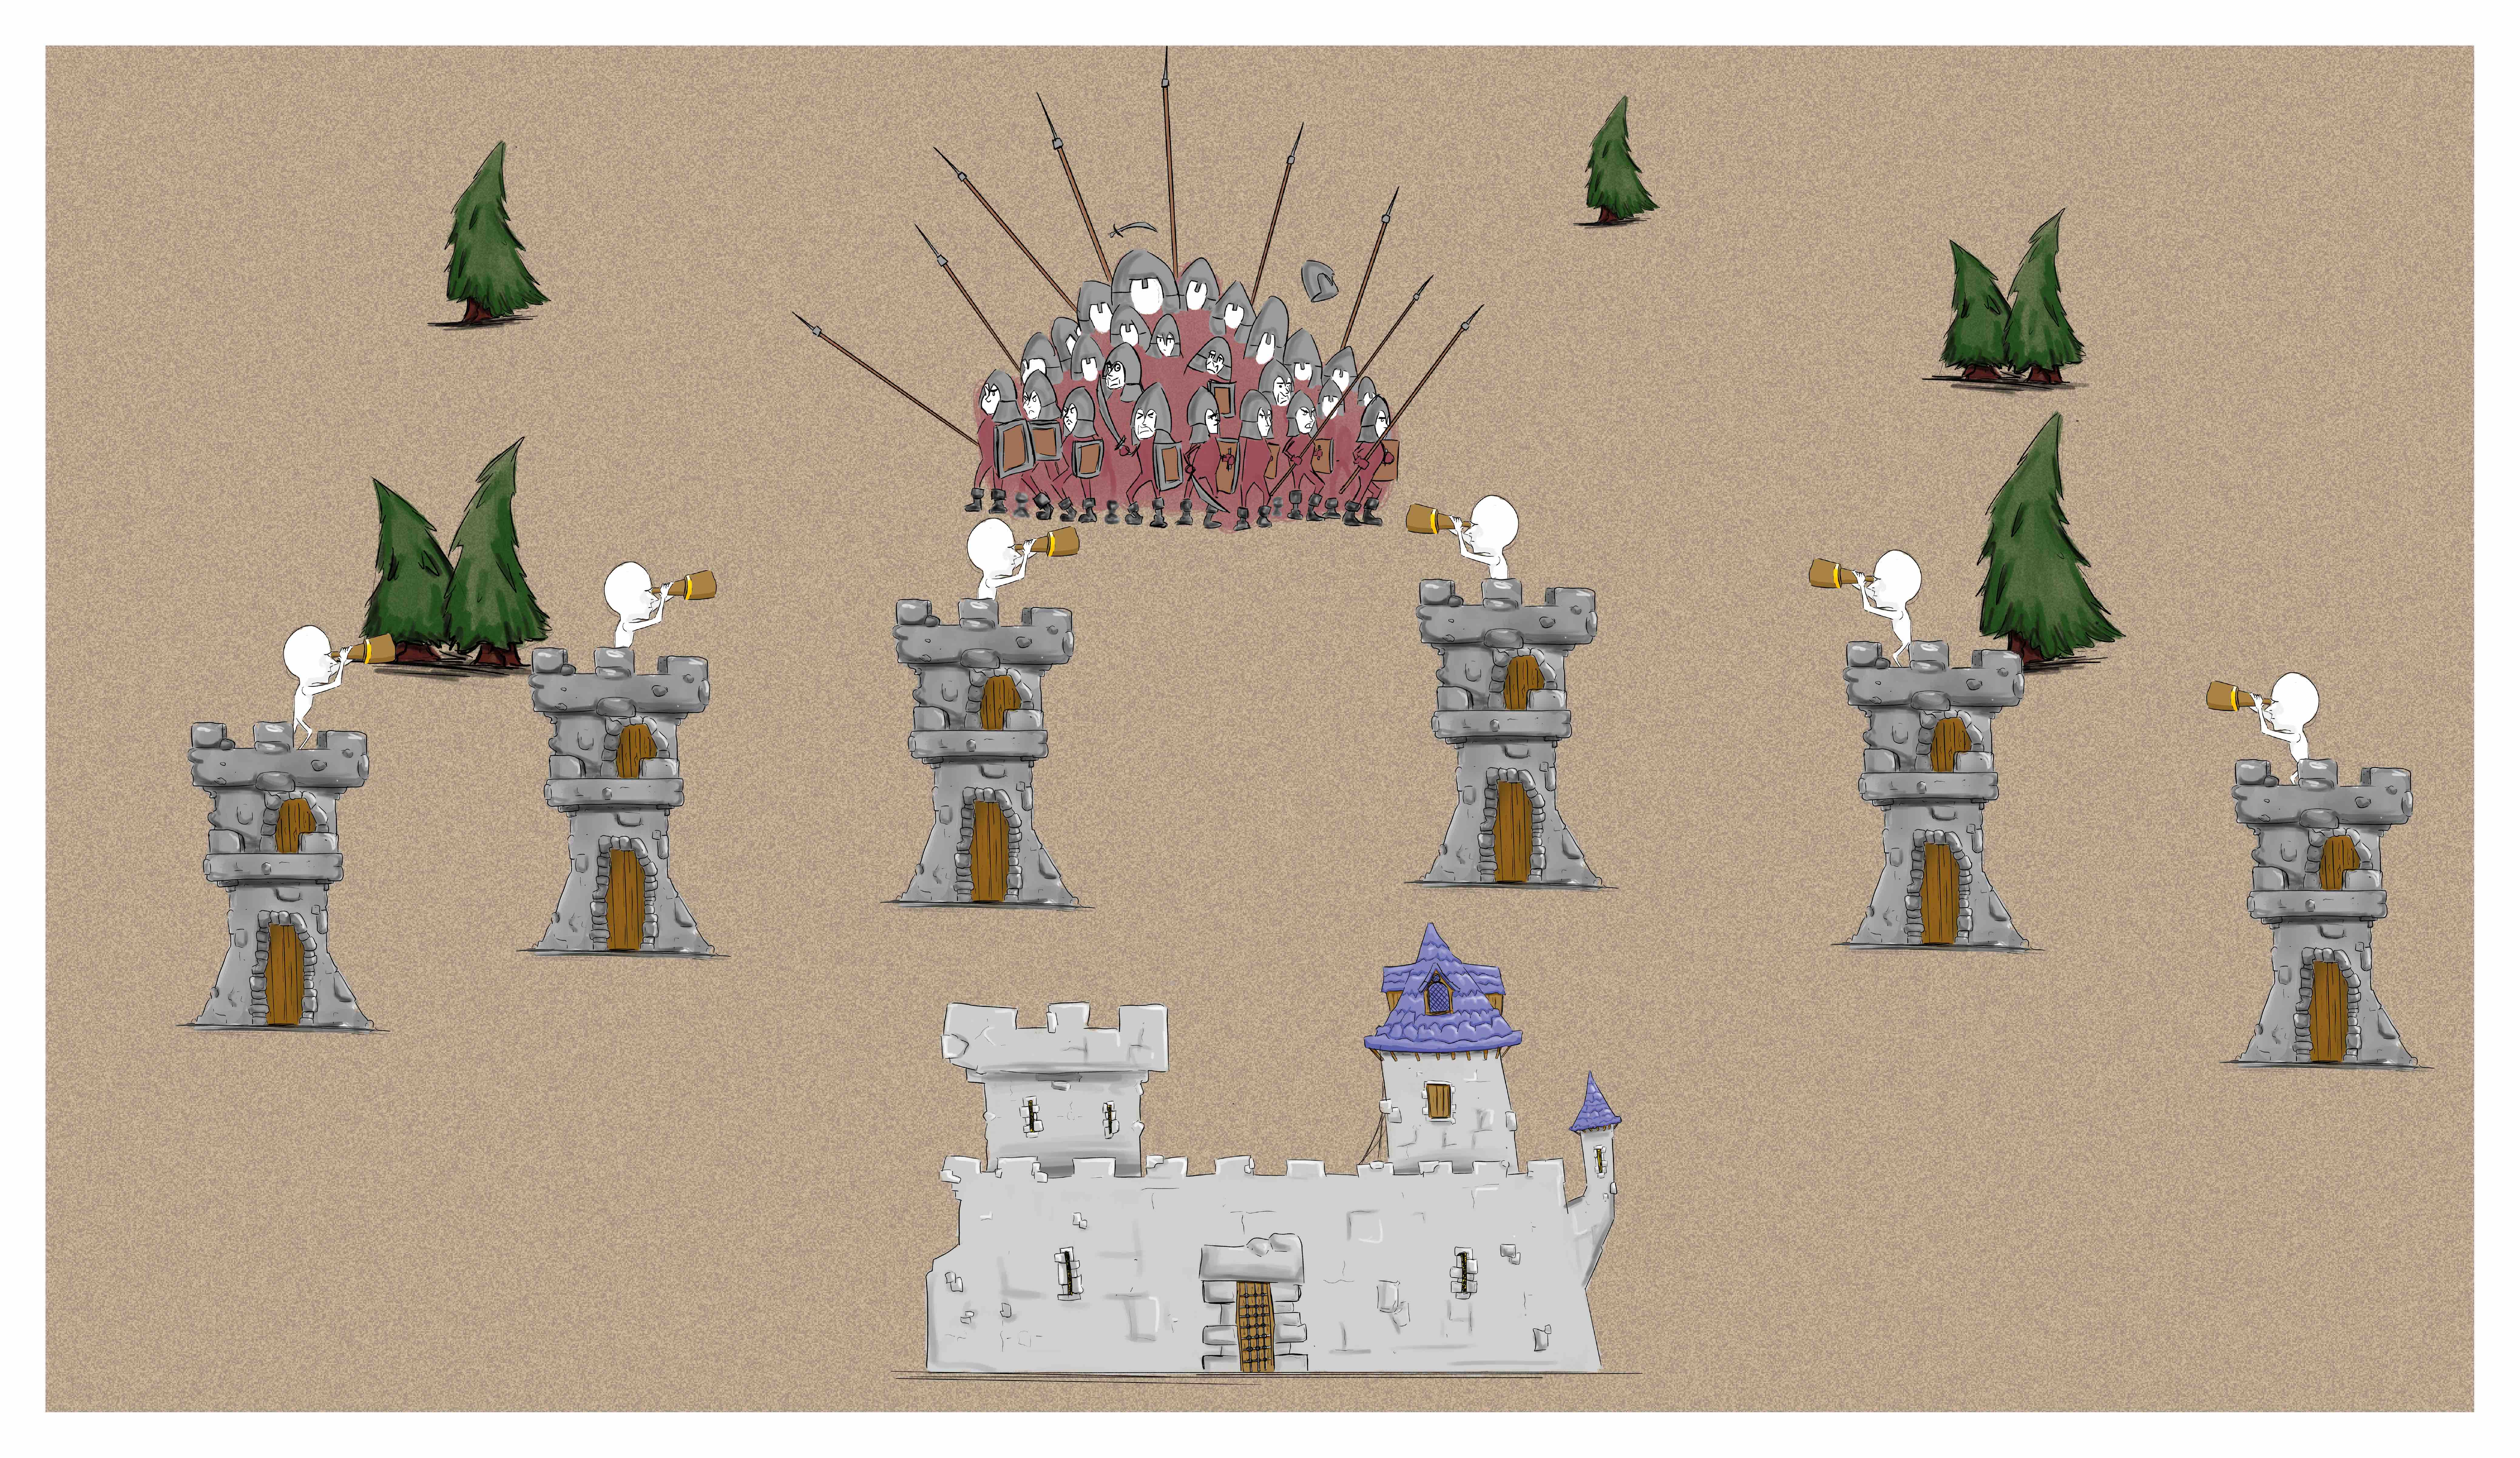 Zoom de l'image précédente avec un château au premier plan. Entre le château et l'armée : 6 tourelles sont alignées de gauche à droite, avec une sentinelle sur le toit de chaque tourelle.